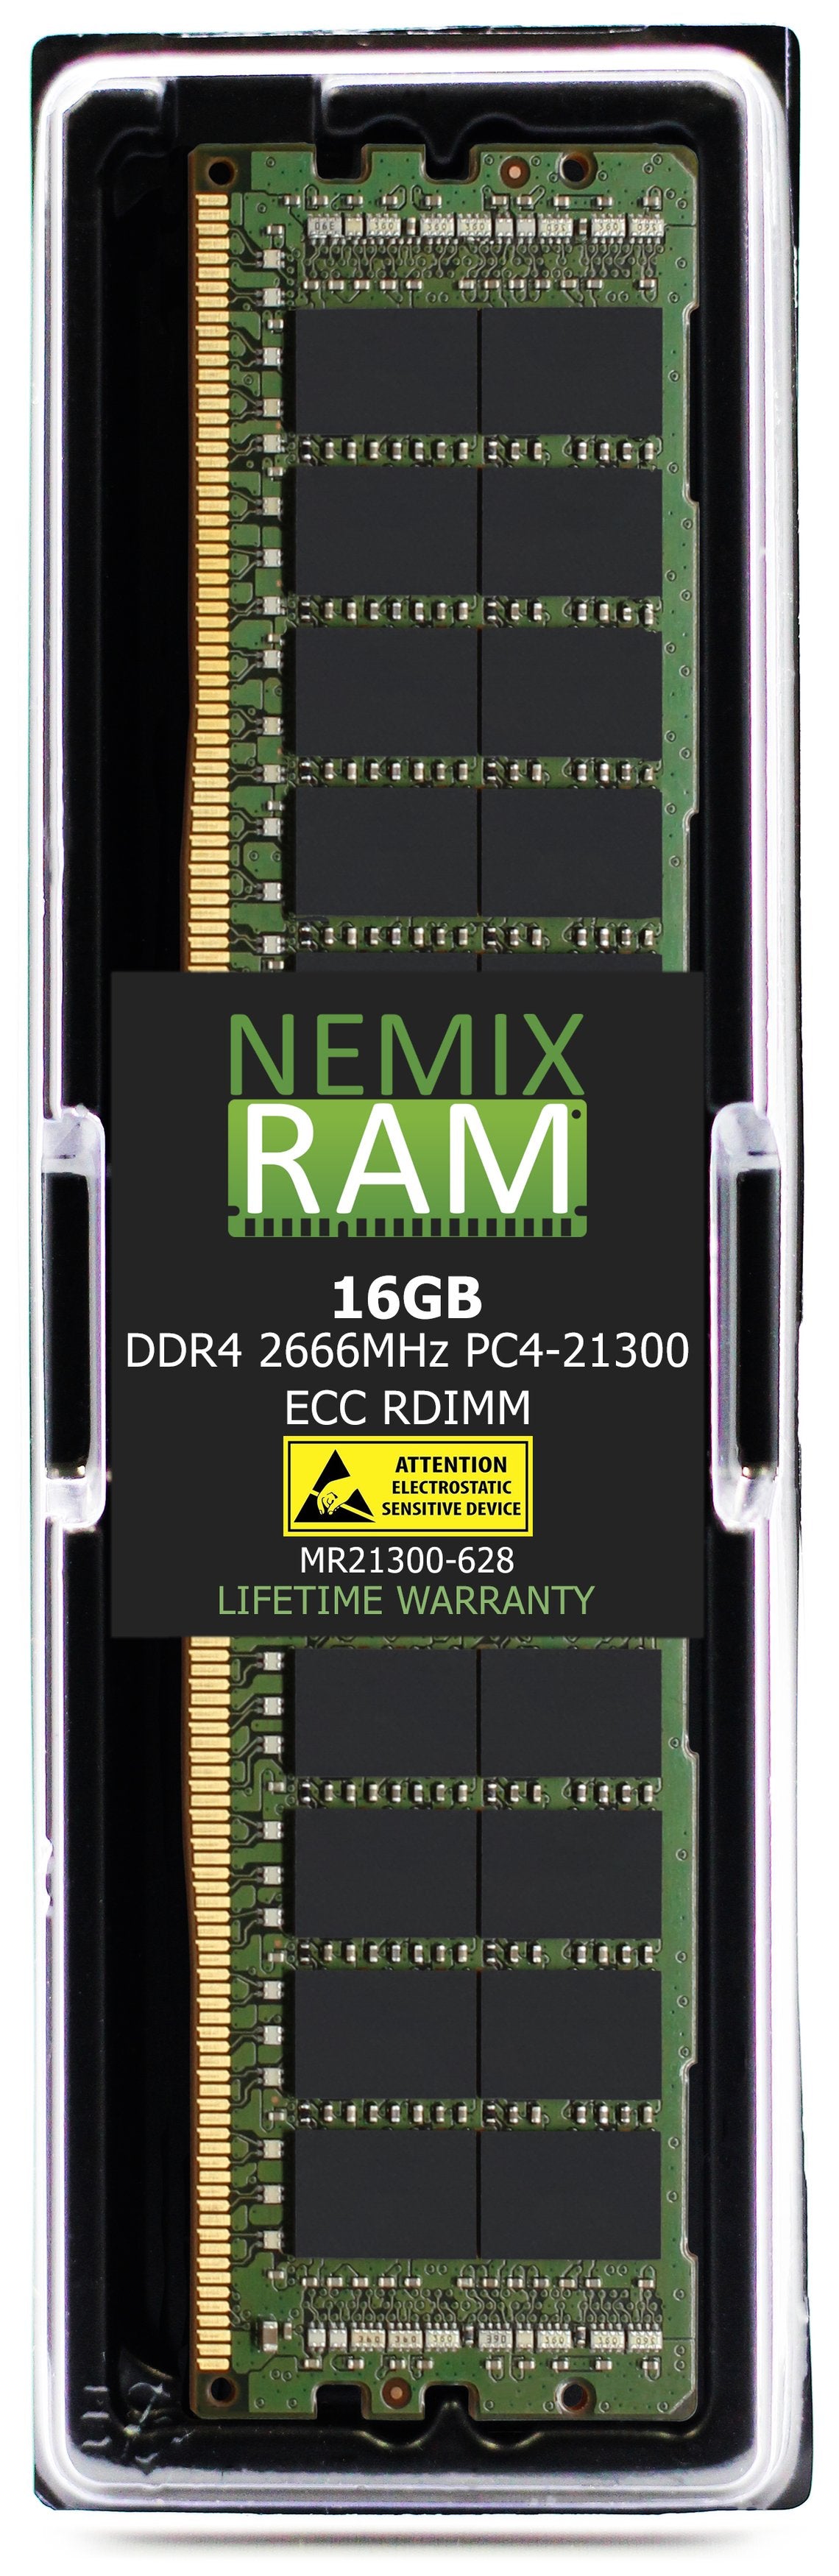 16GB DDR4 2666MHZ PC4-21300 RDIMM Compatible with Supermicro MEM-DR416L-CL03-ER29